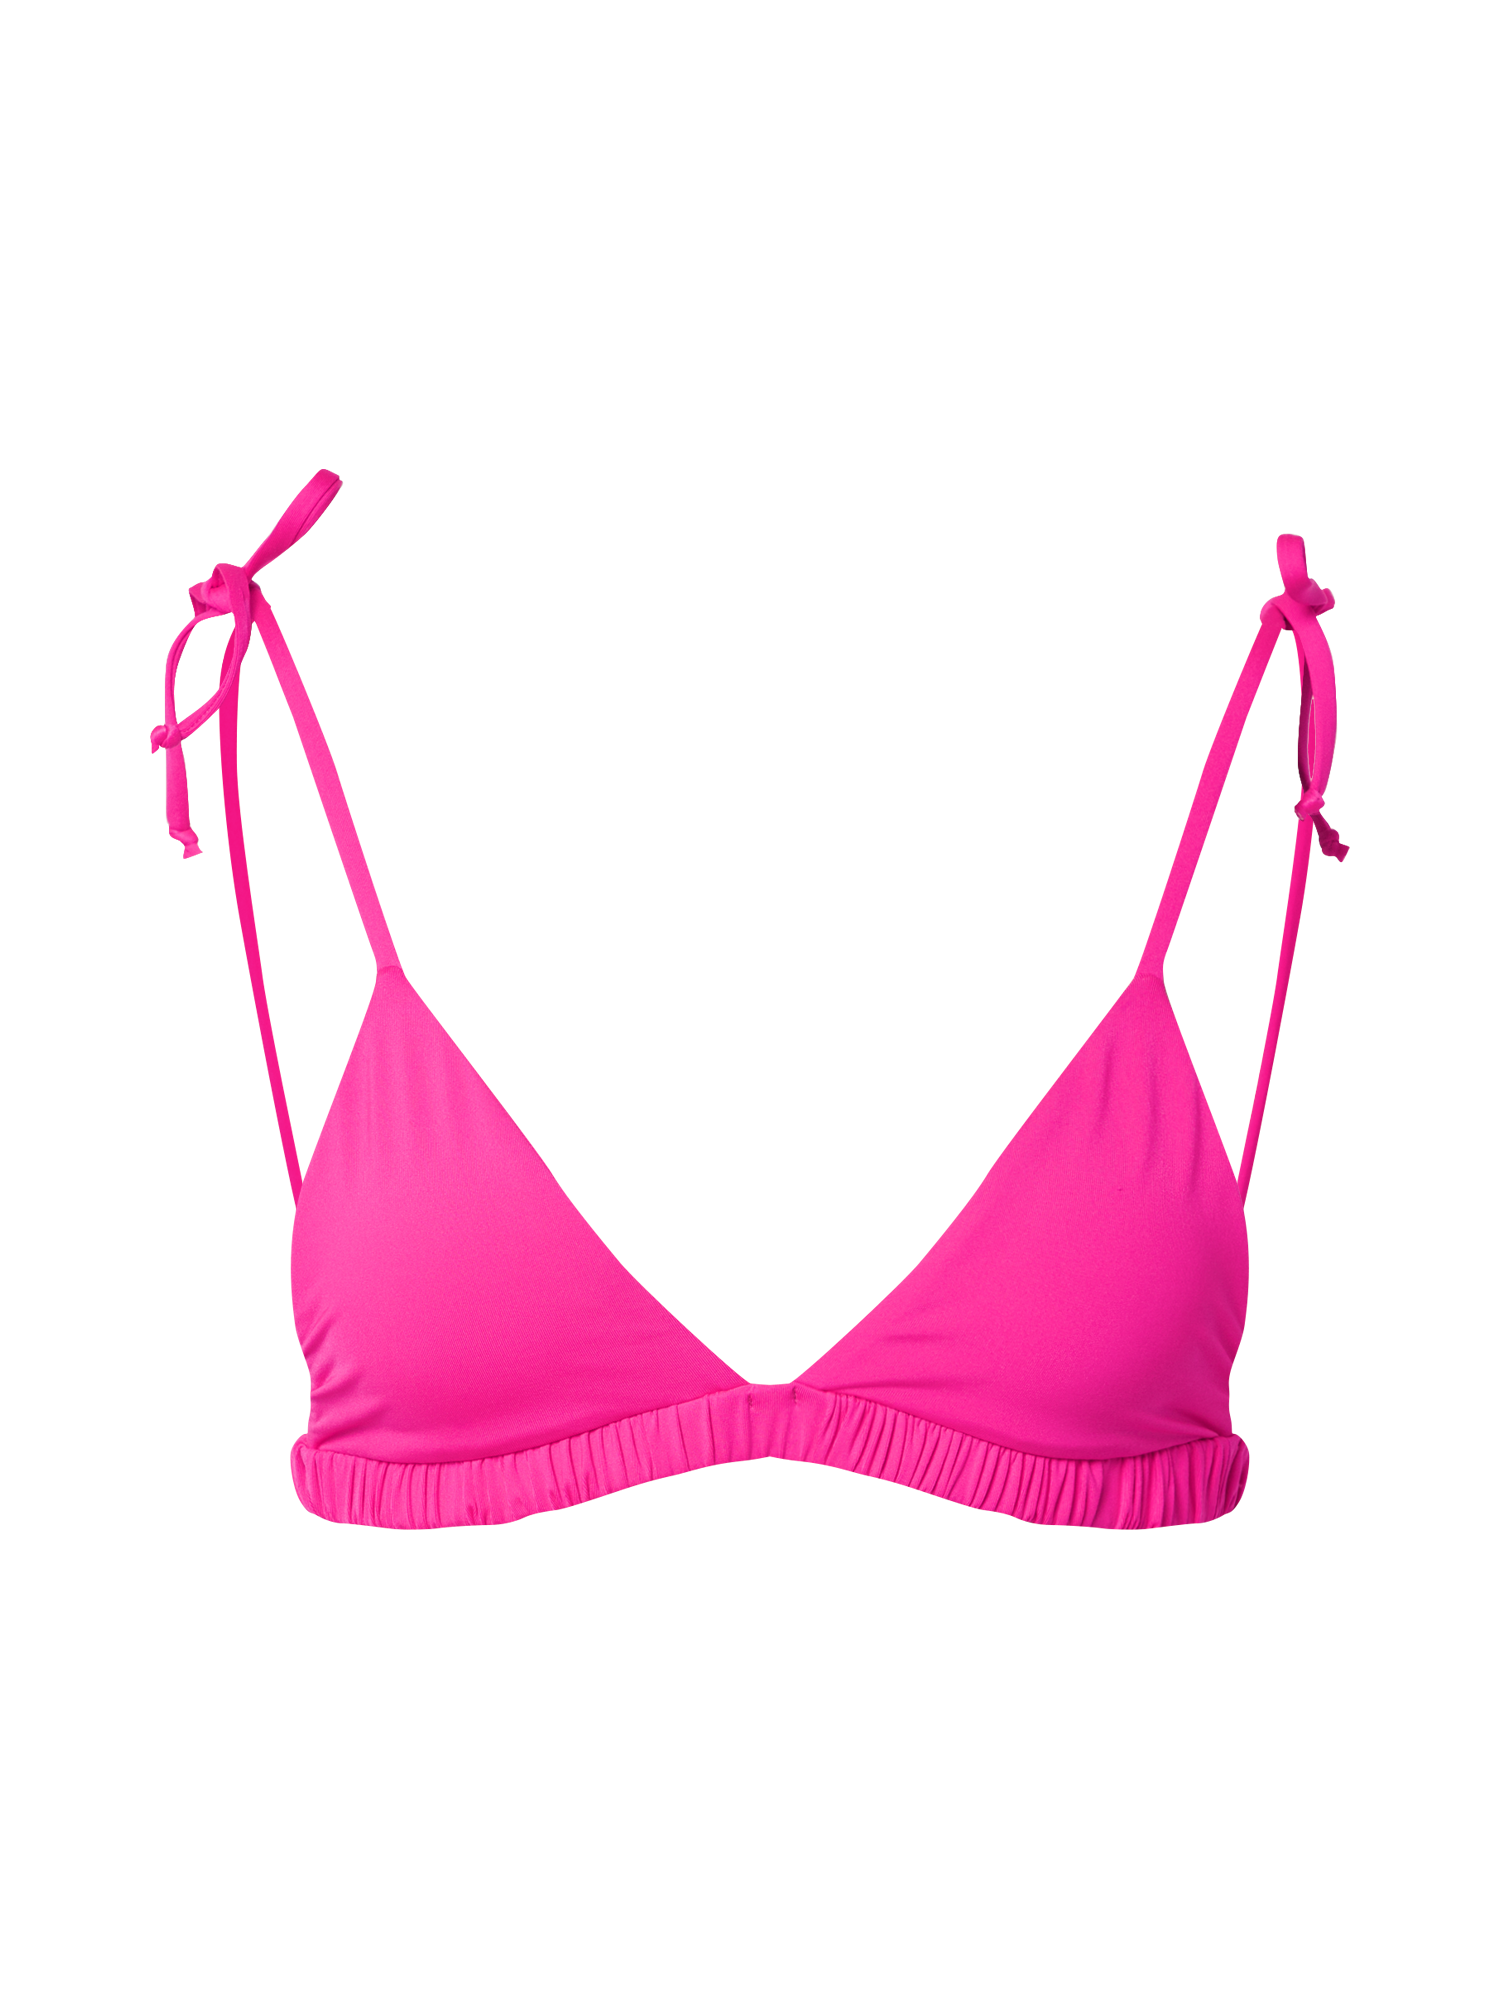 Frankies Bikinis Bikinitop TIKA w kolorze Różowym 